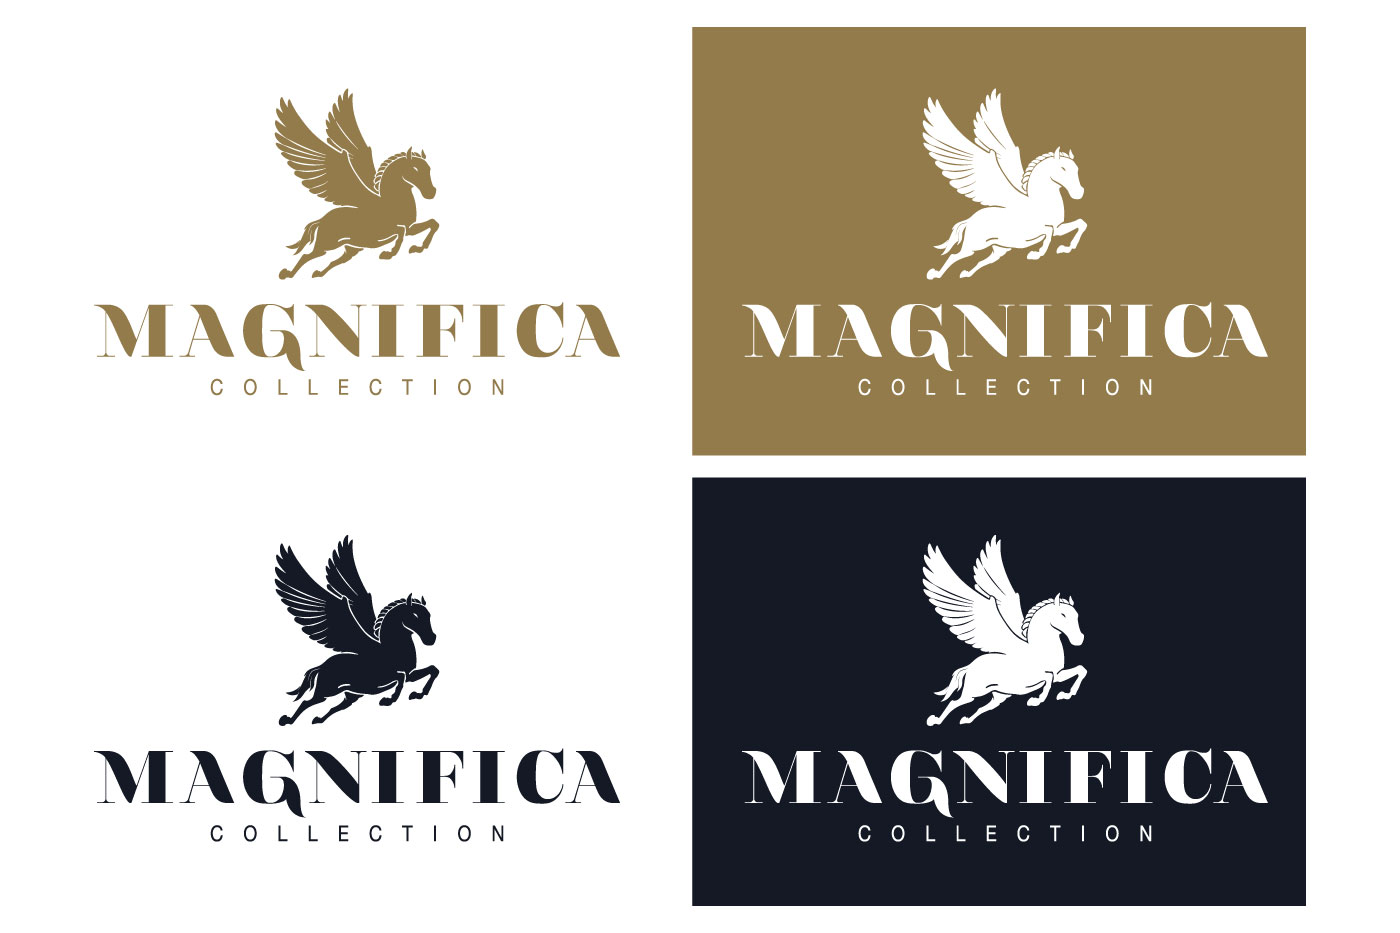 Magnifica collection dobleessa logo simbolo colorimetria